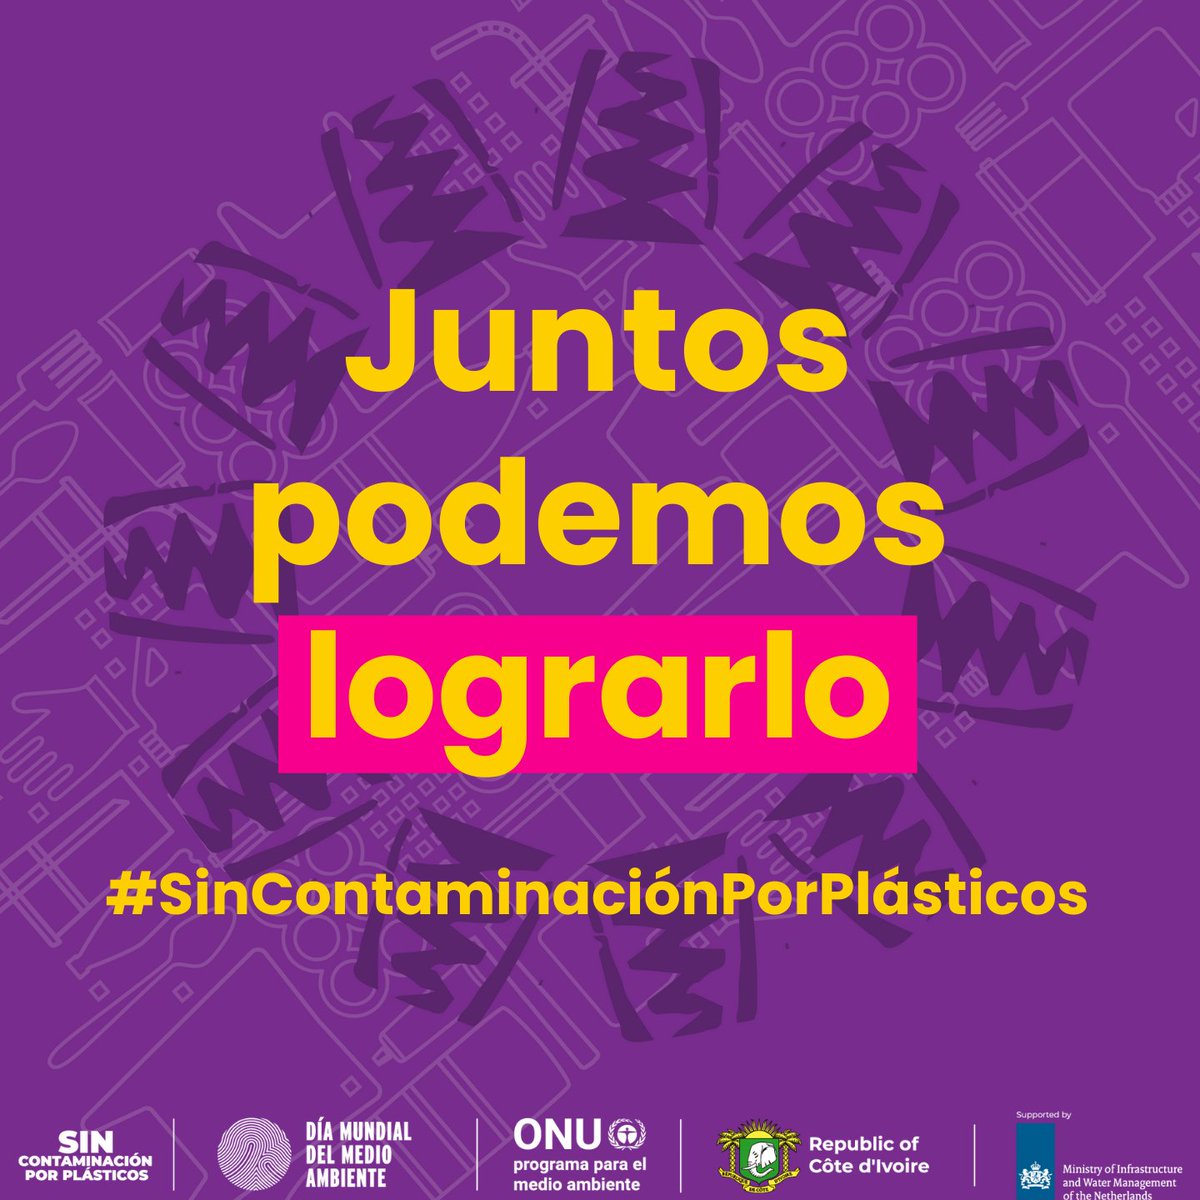 ¡Hoy es el #DíaMundialDelMedioAmbiente! 

La contaminación por plásticos se puede prevenir.  

Por un 🌎 #SinContaminaciónPorPlásticos.